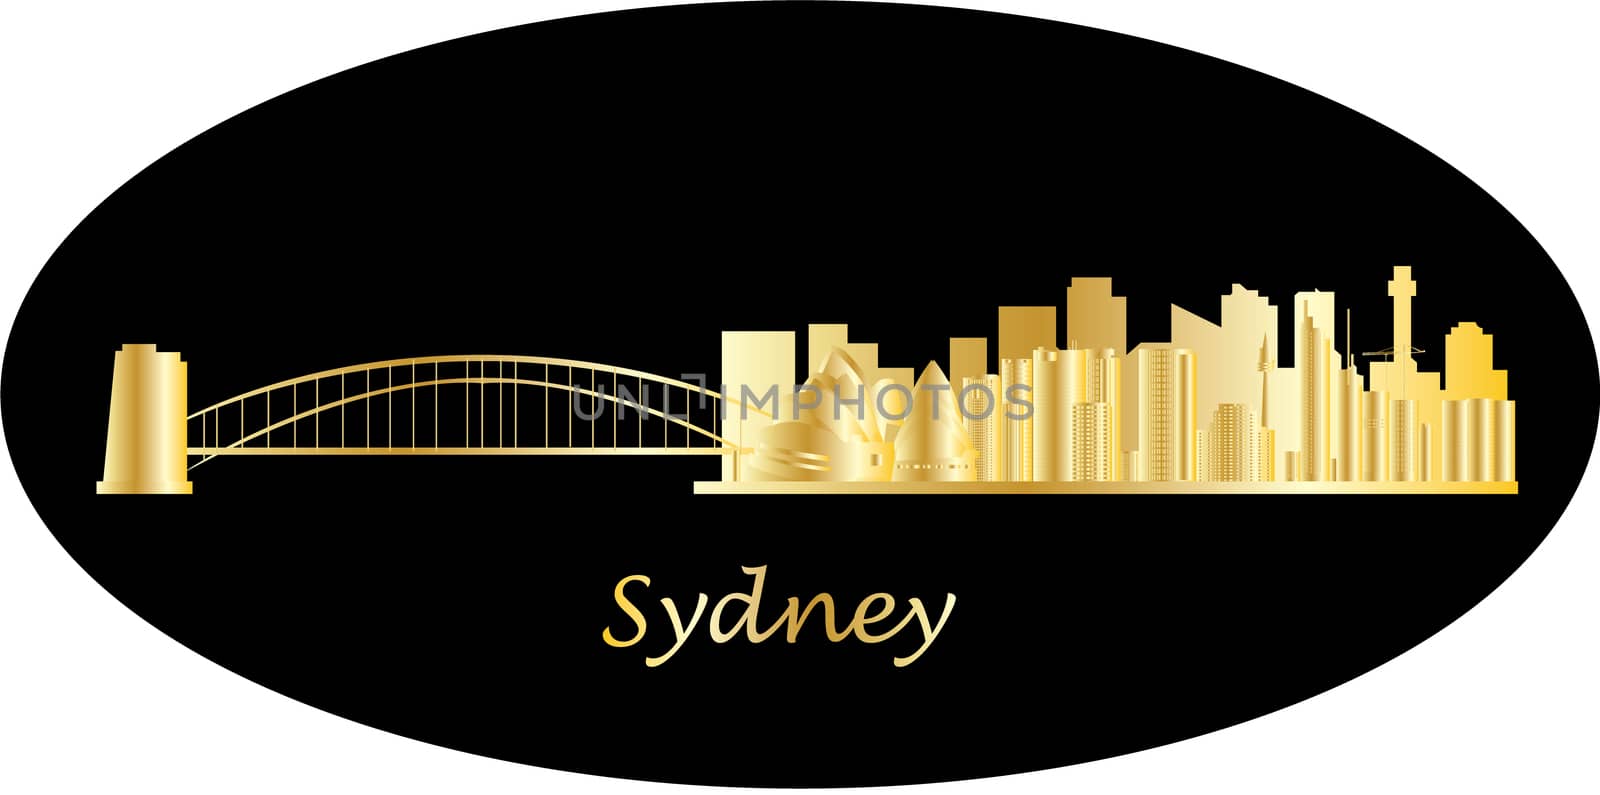 sydney skyline by compuinfoto